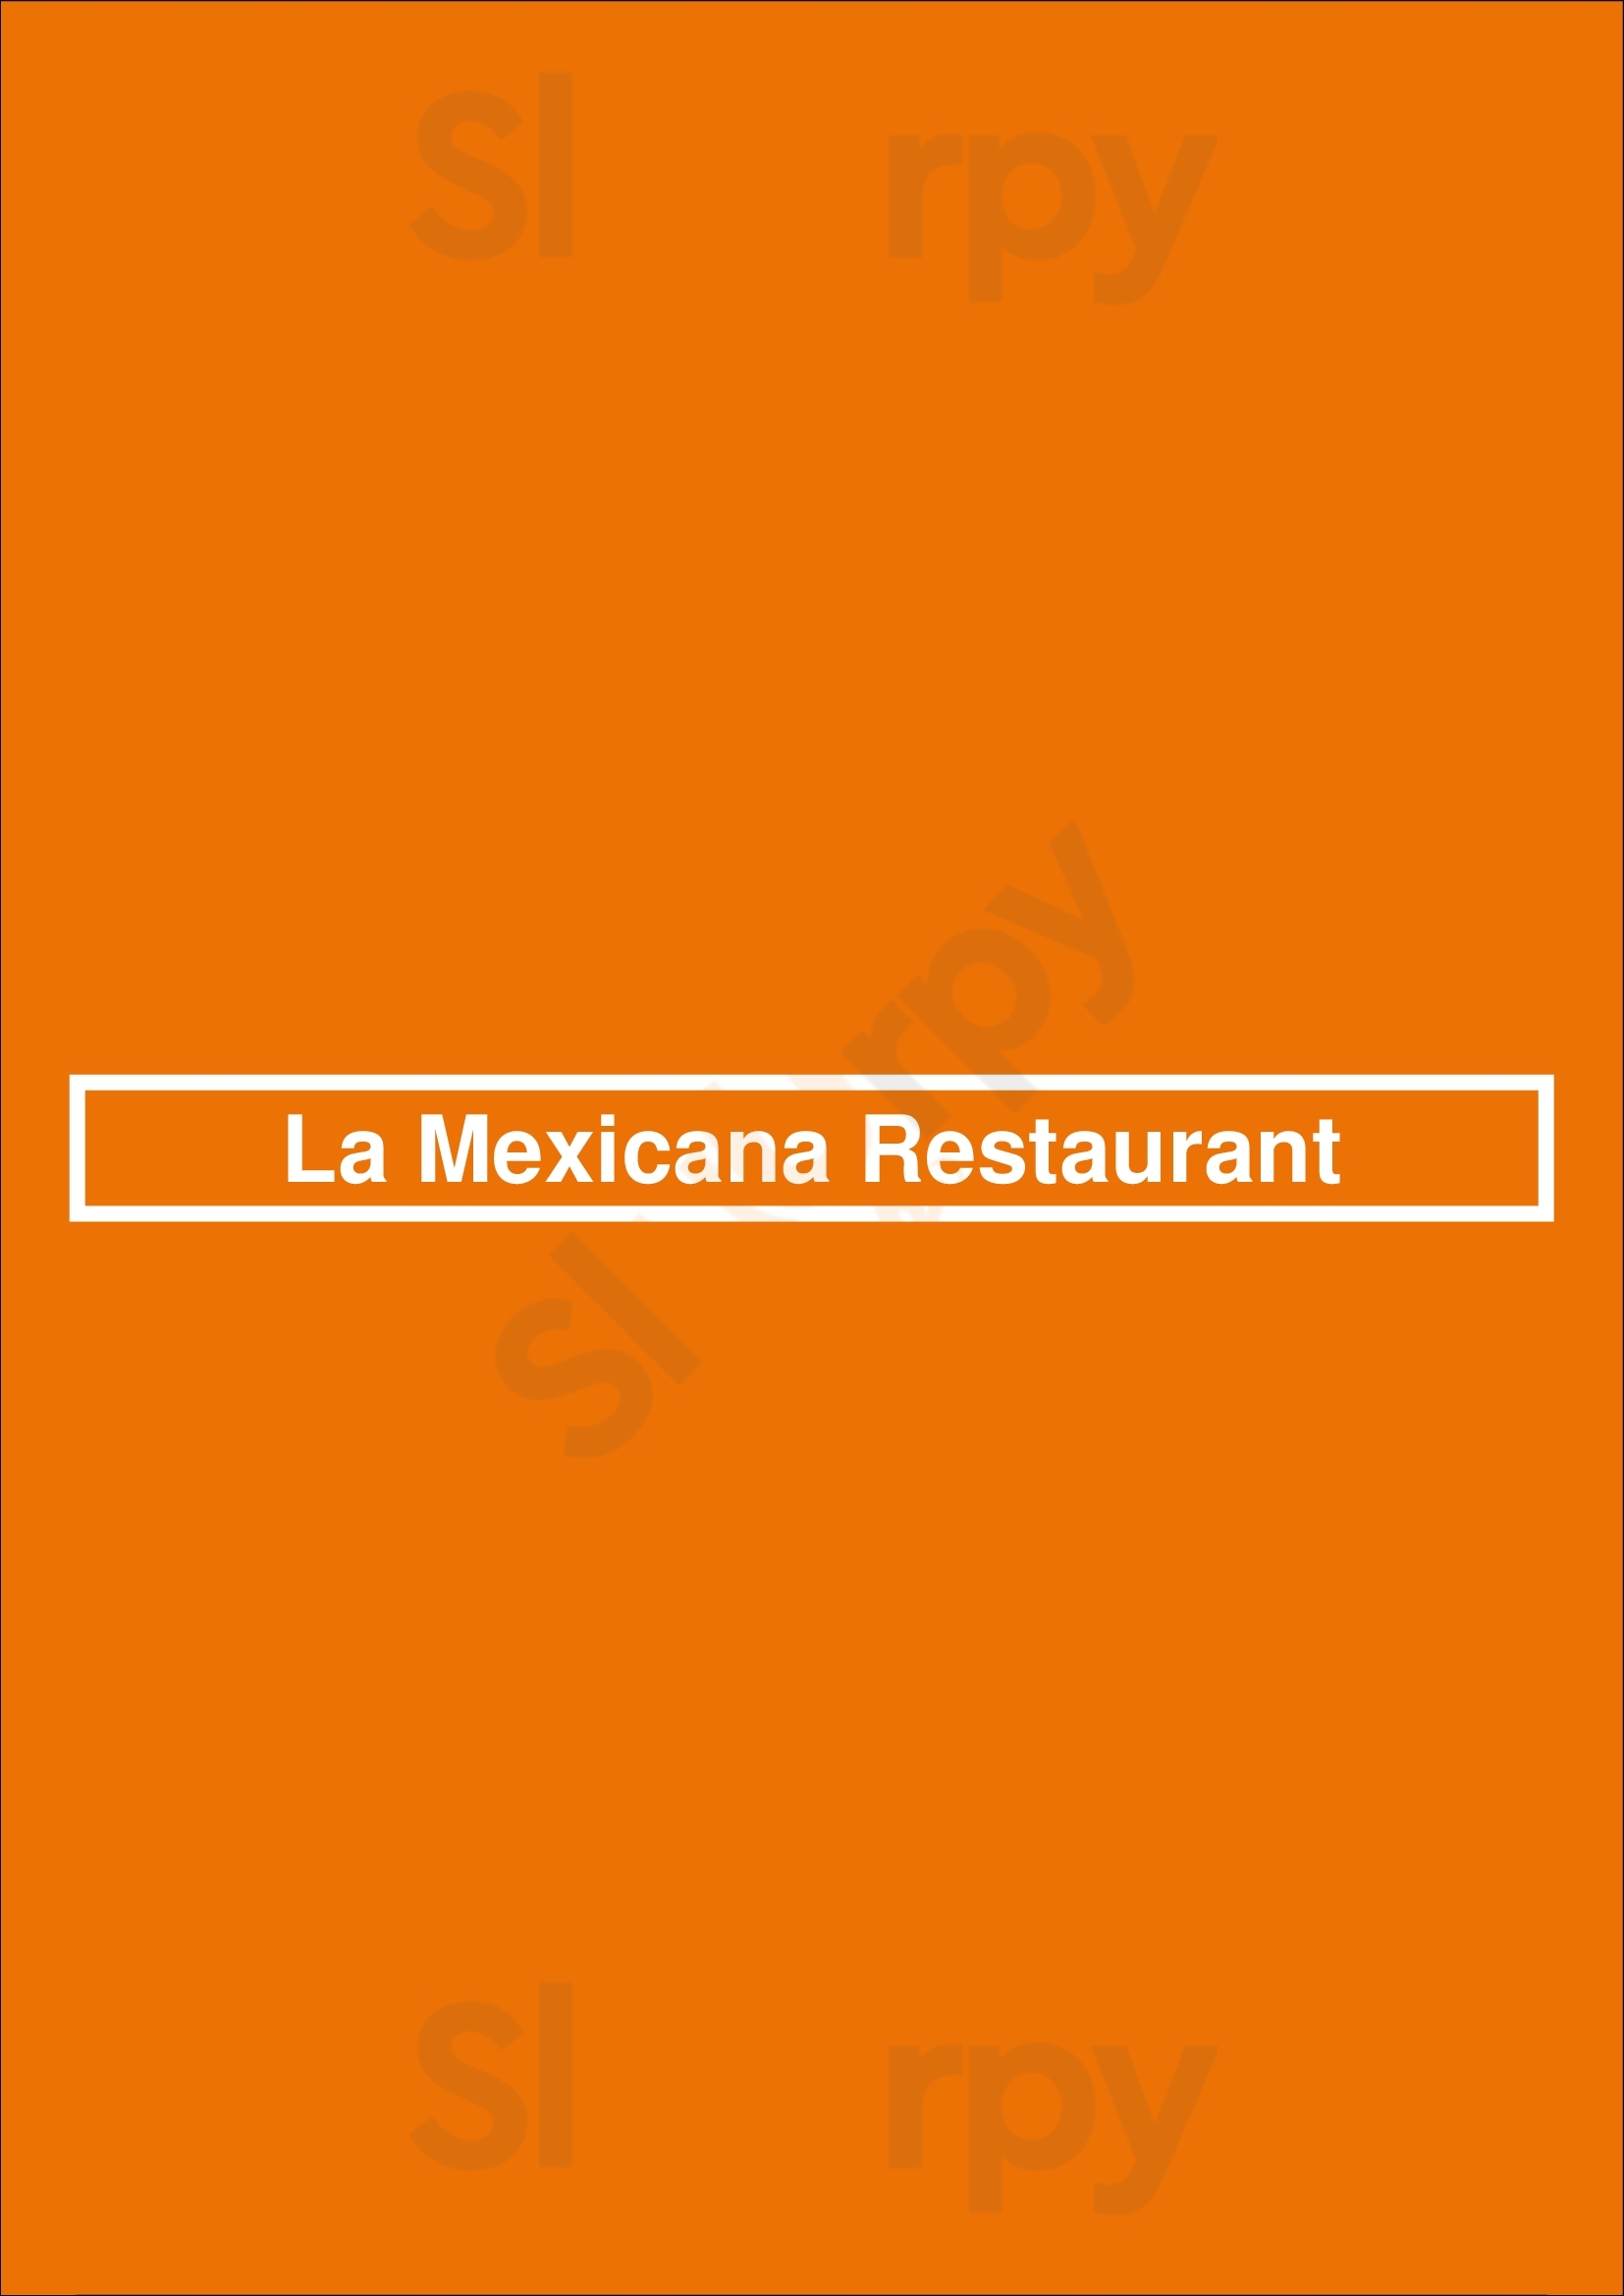 La Mexicana Restaurant Oakland Menu - 1